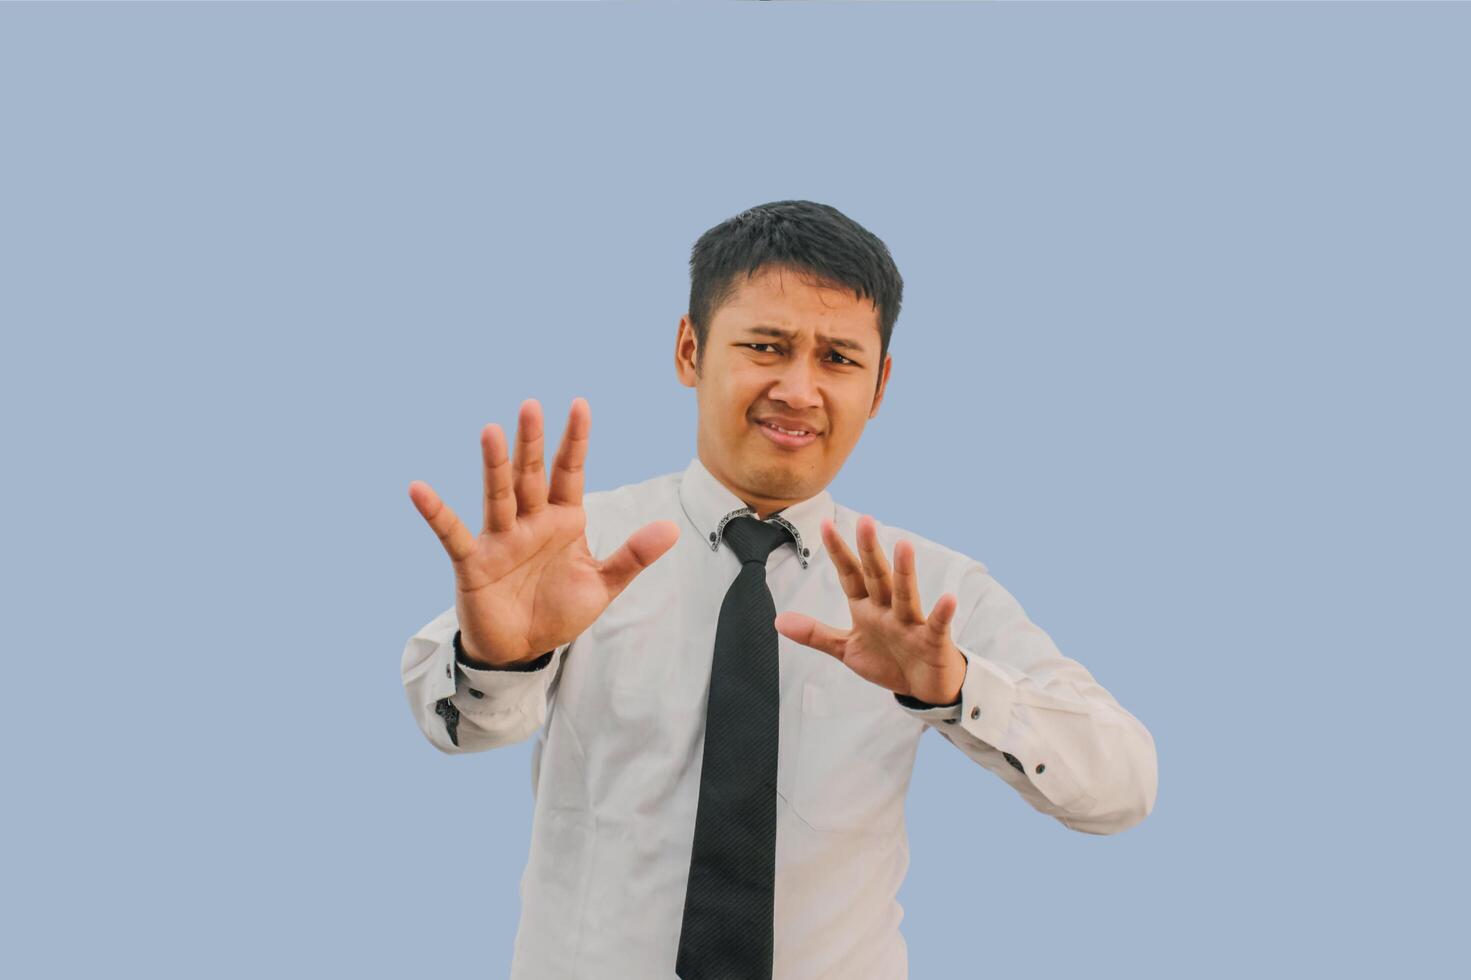 Erwachsene asiatisch Mann schreiend Ausdruck erschrocken während seine Hände tun halt Geste foto